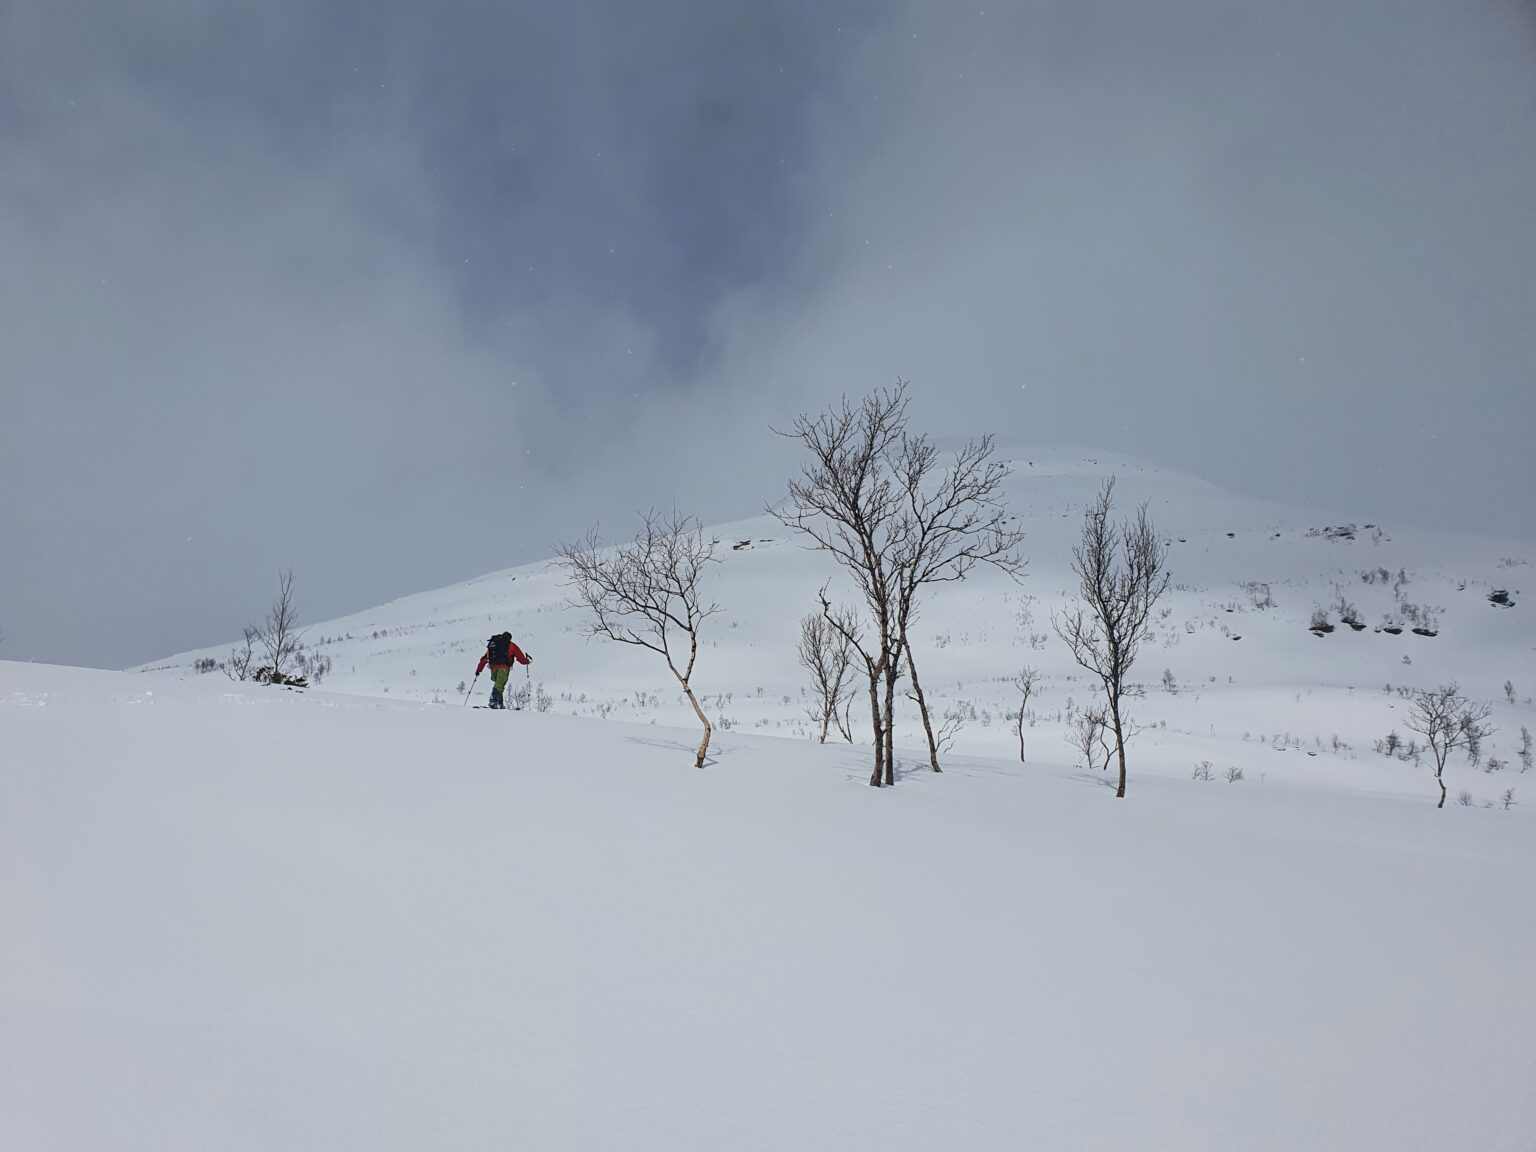 ski touring near the Southwest ridge of Sjufjellet